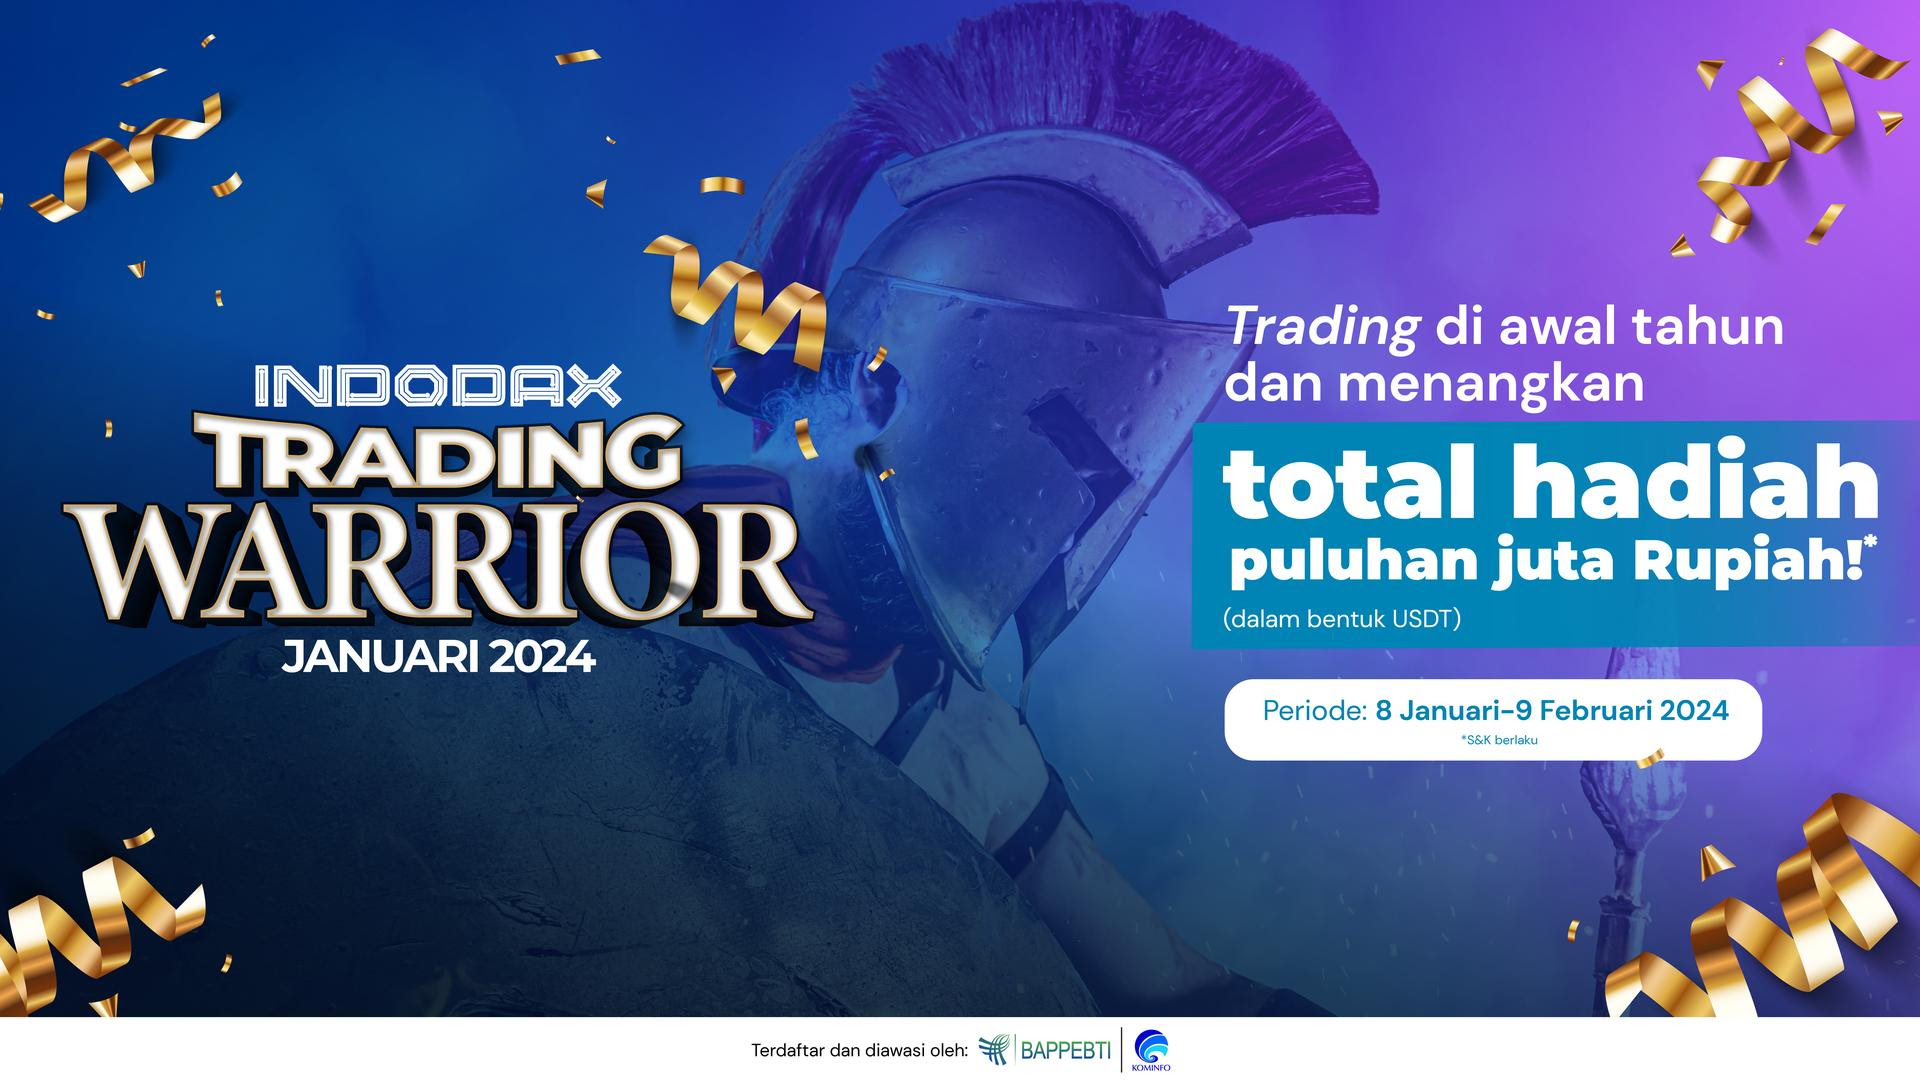   Kompetisi 'Trading Warrior' INDODAX dengan Hadiah Total Jutaan Rupiah, Ayo Ikuti